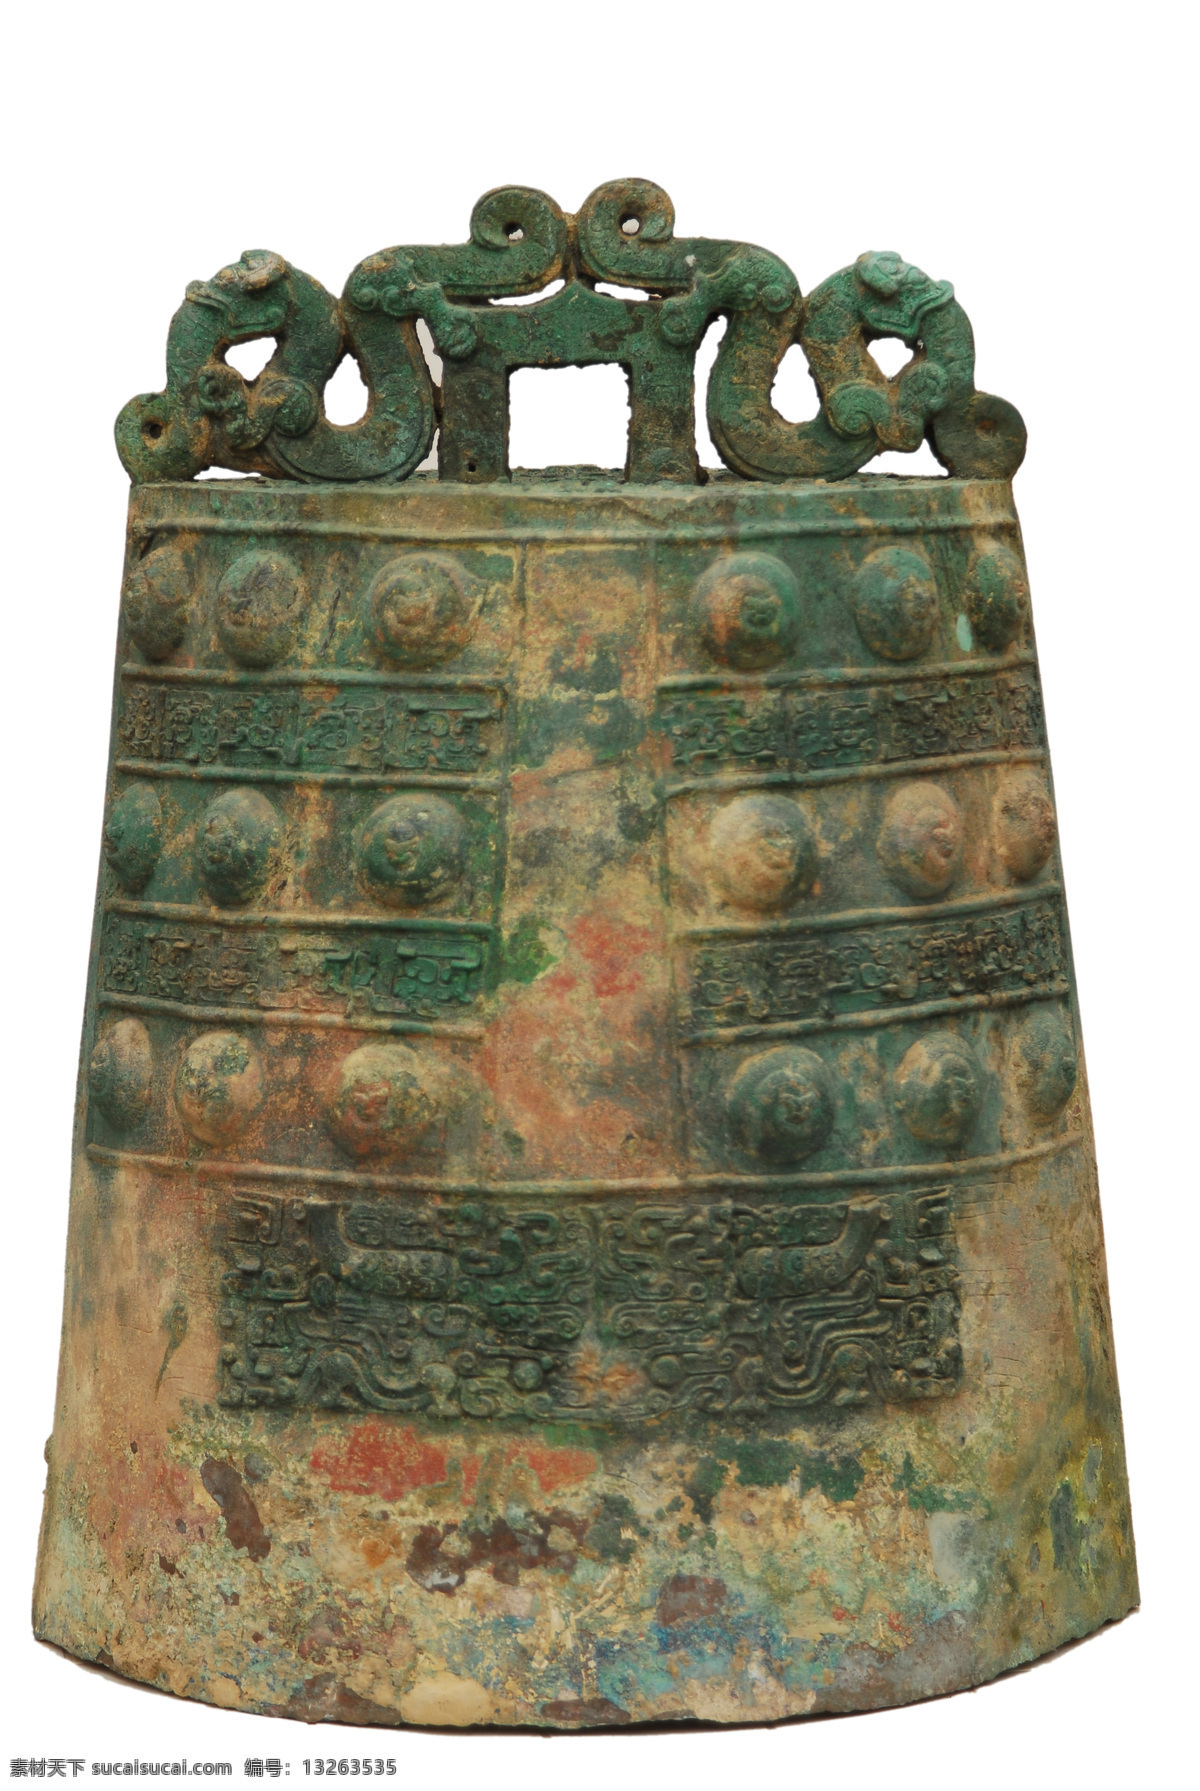 青铜器 钟 镈钟 青铜大钟 秦代青铜器 文化艺术 传统文化